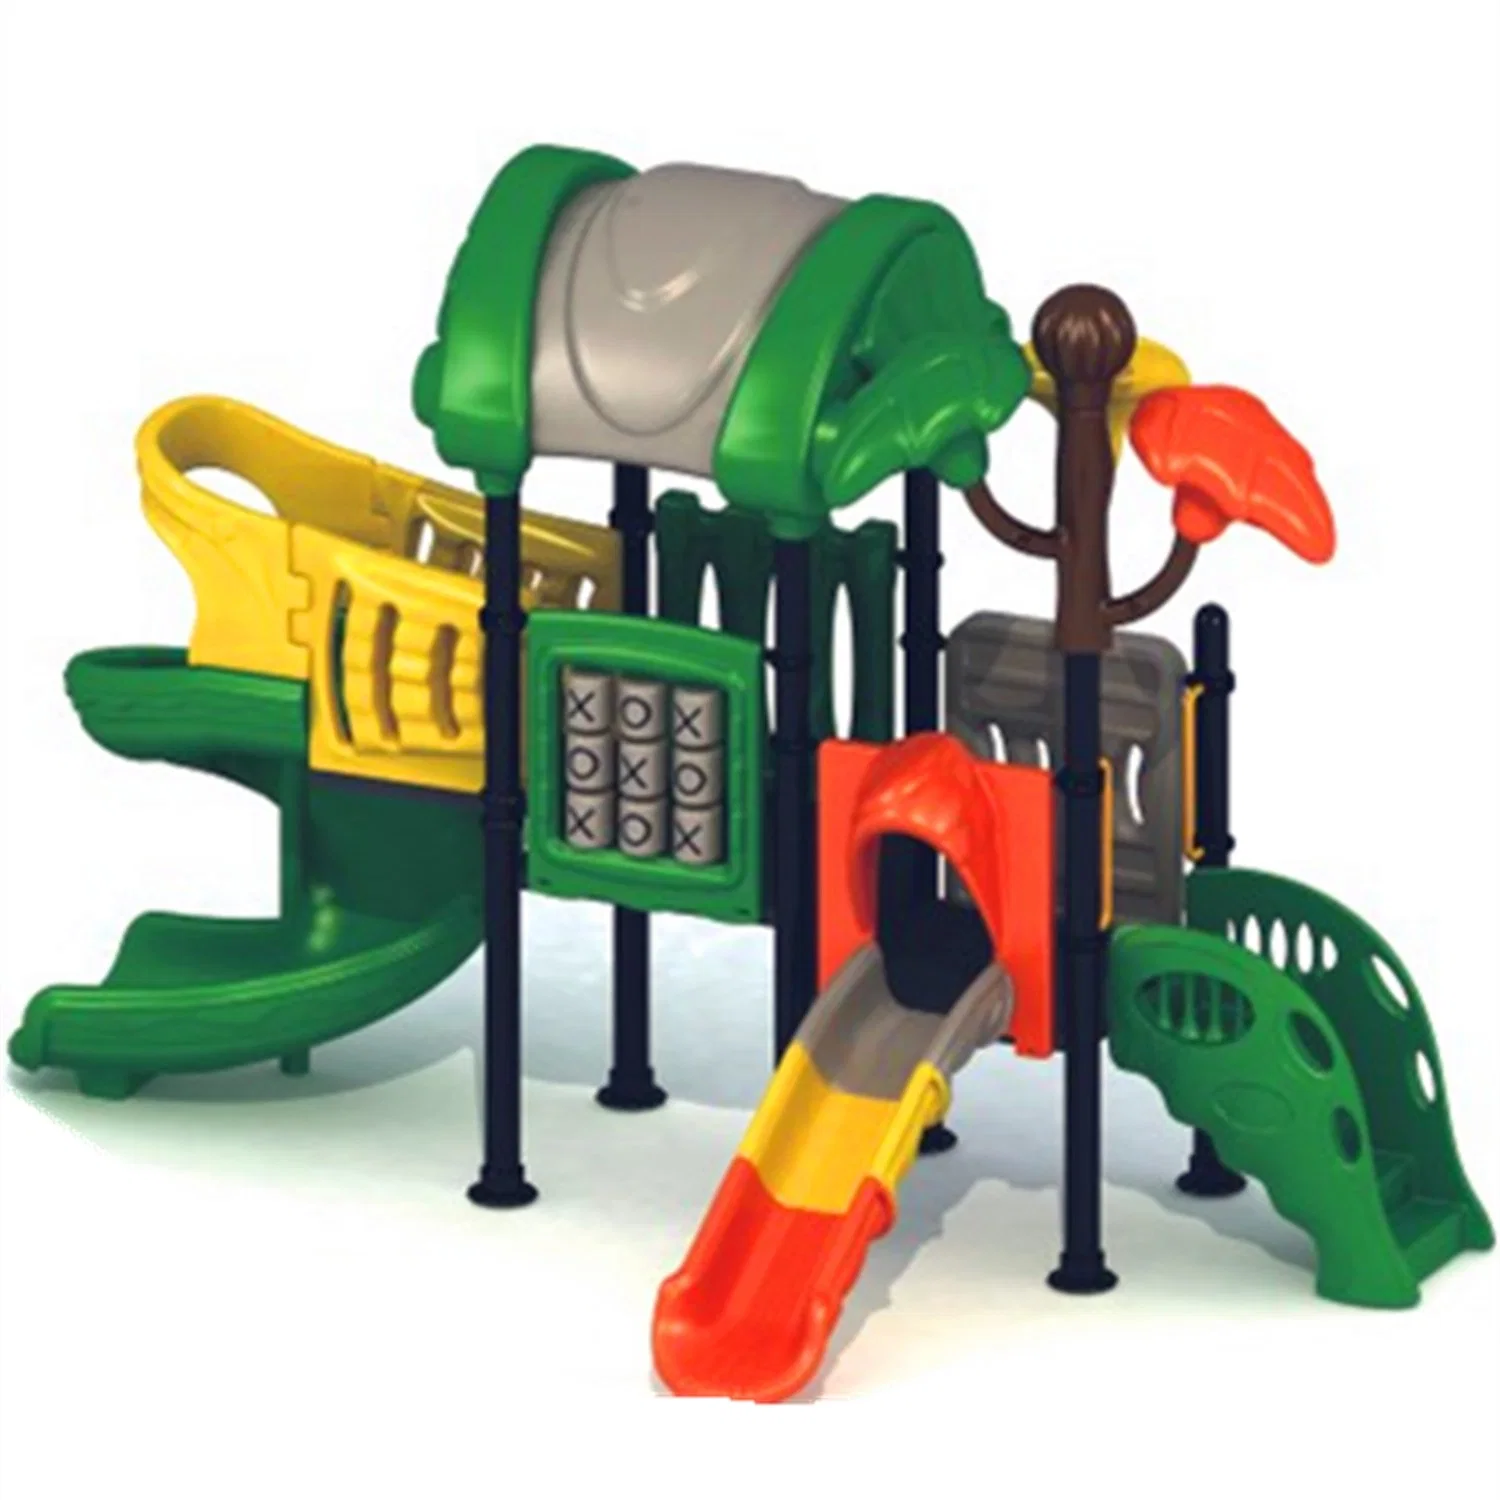 Schule große Outdoor Kinderspielplatz Ausrüstung Kinder Vergnügungspark